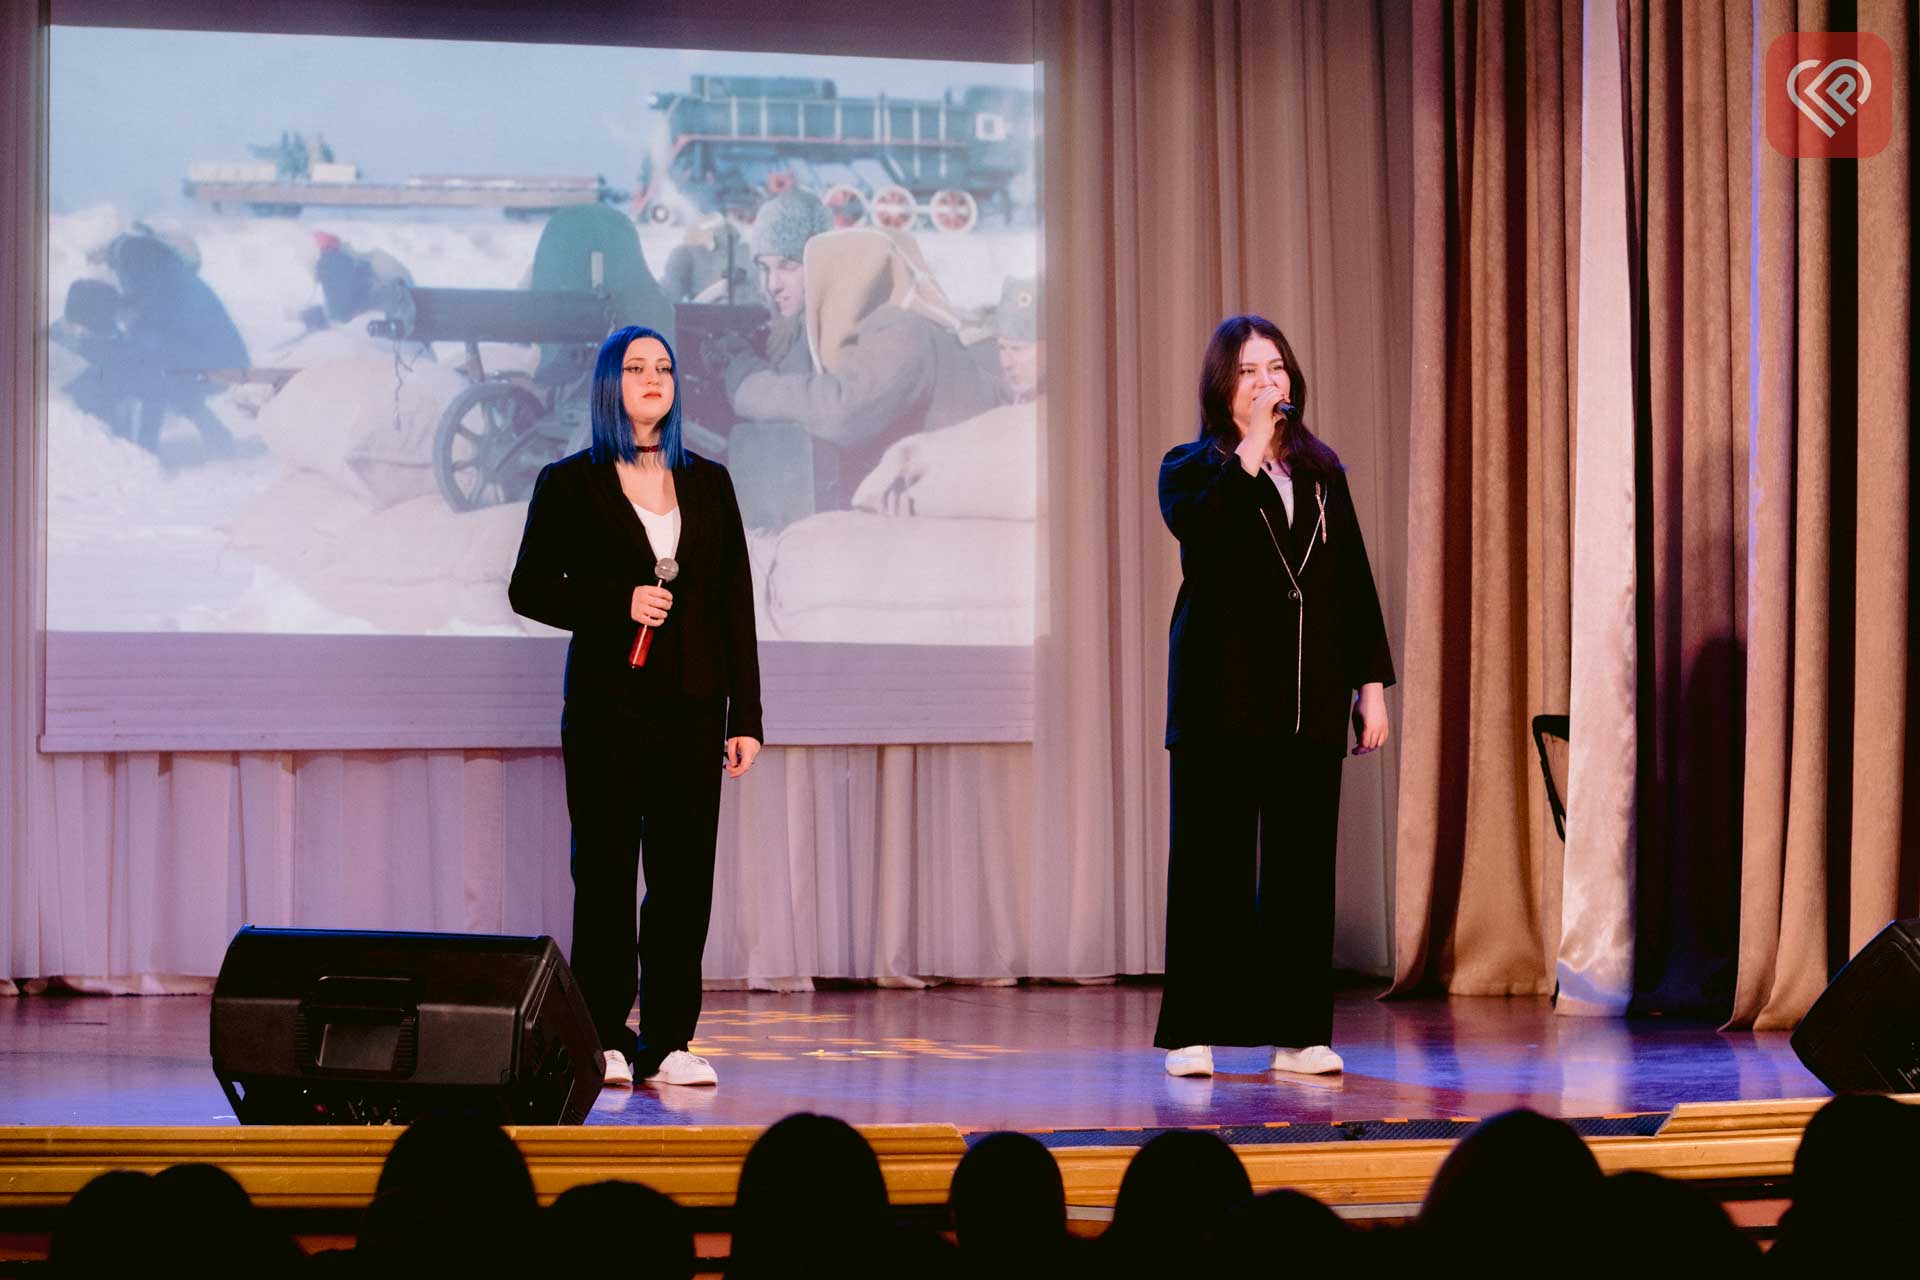 У Переяславі вшанували пам’ять Героїв Крут: молодь підготувала тематичні виступи, а школярам показали відеофрагменти з фільму